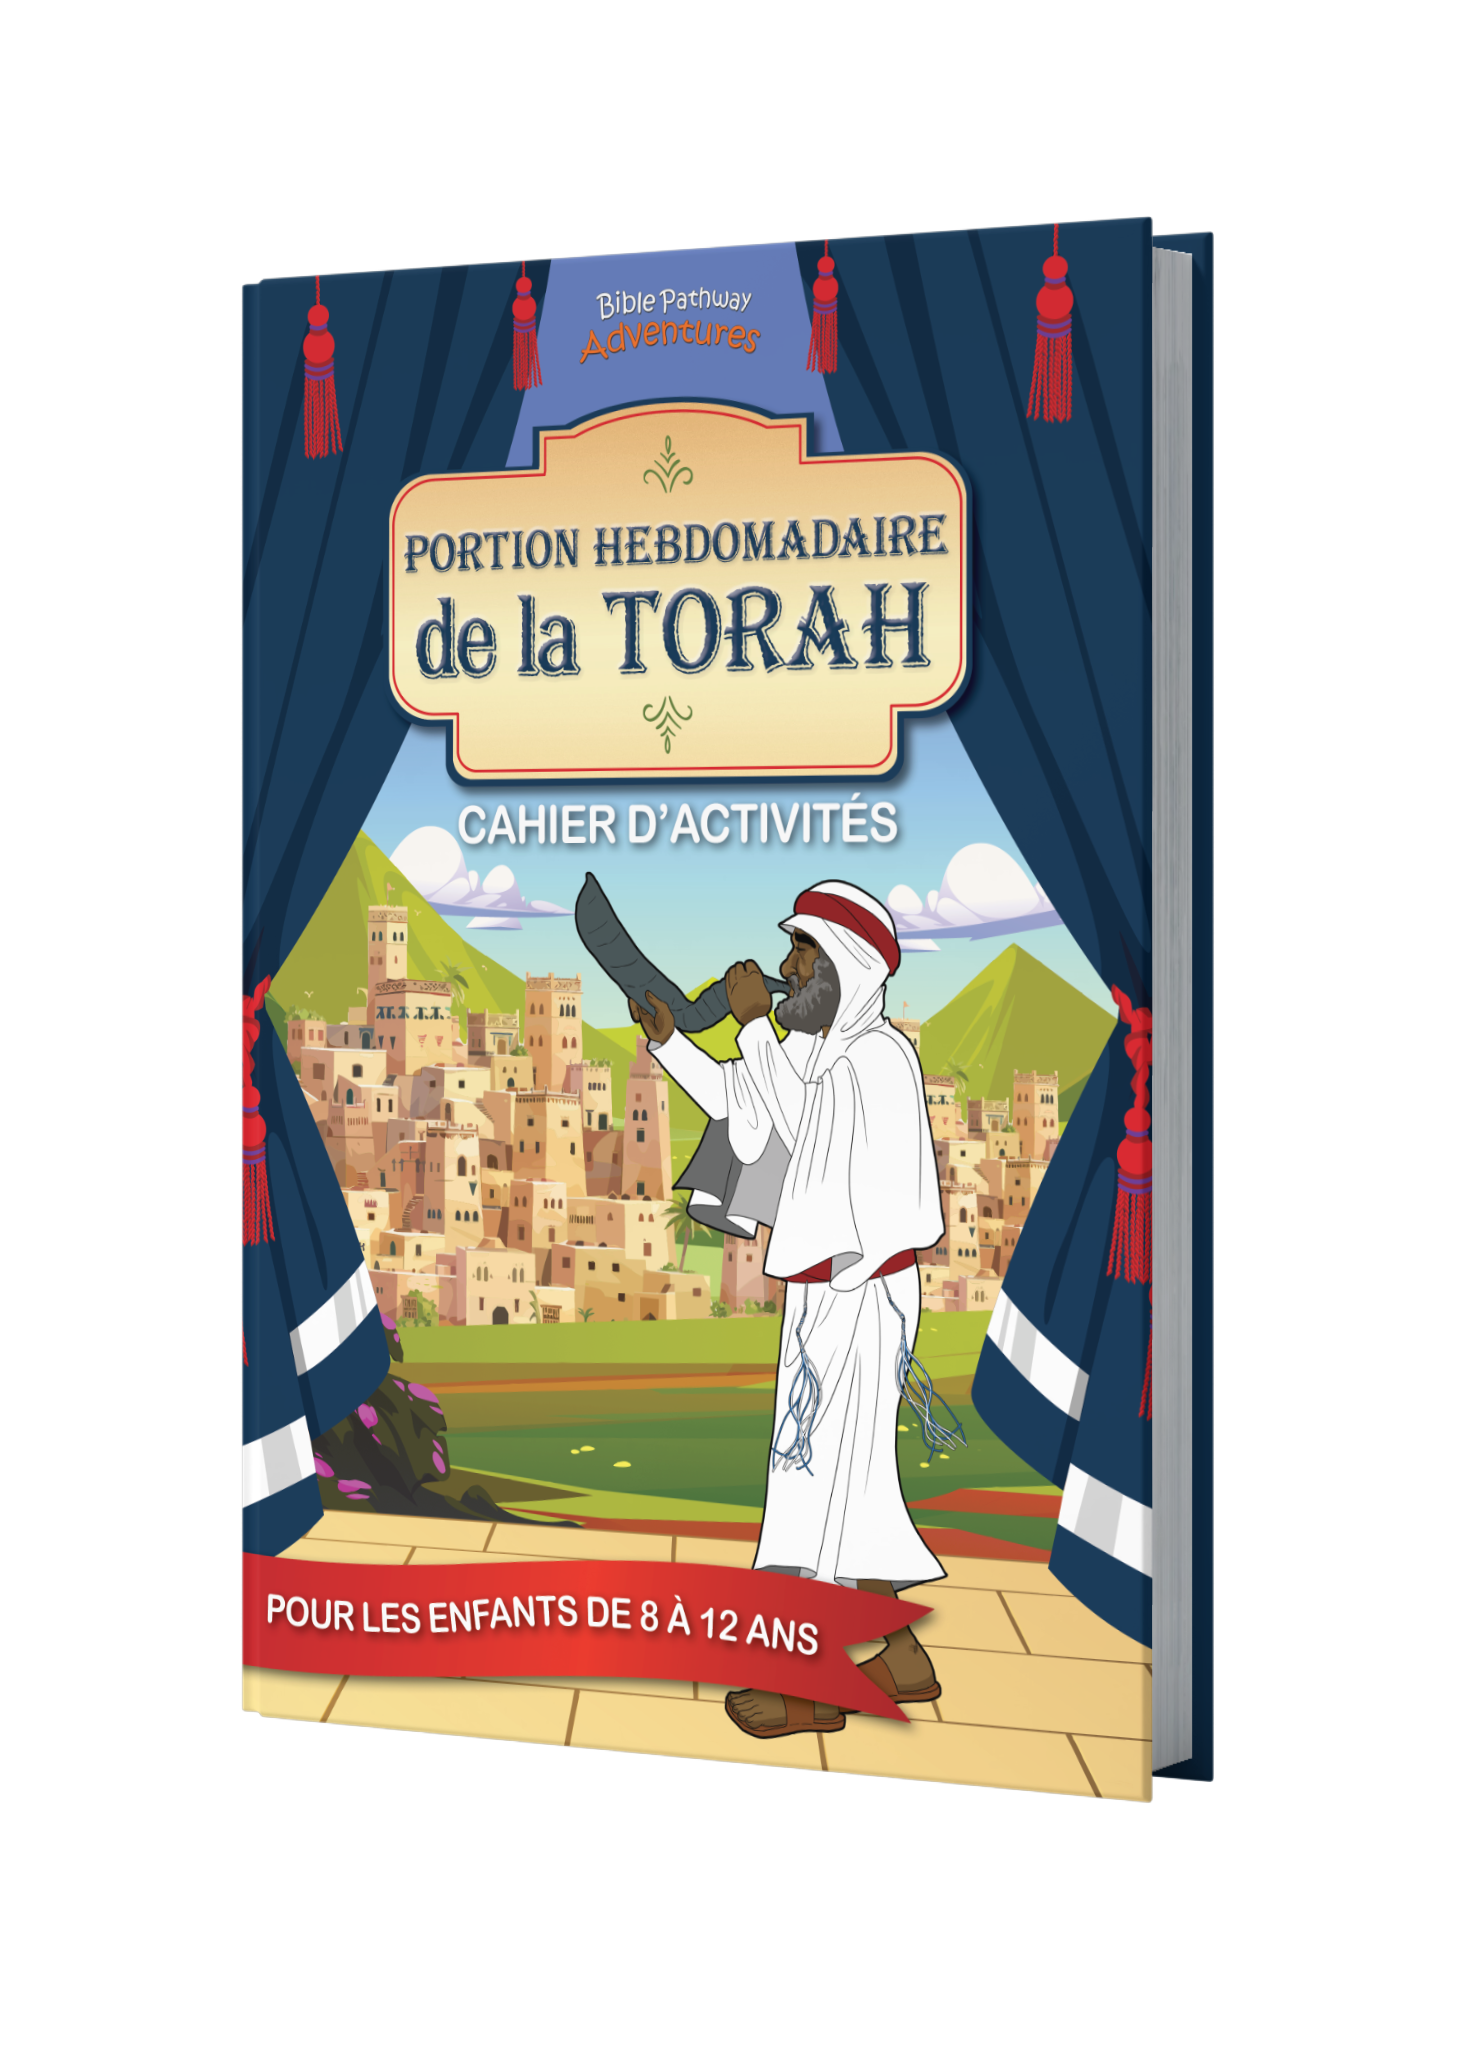 Portion hebdomadaire de la Torah : Cahier d’activités